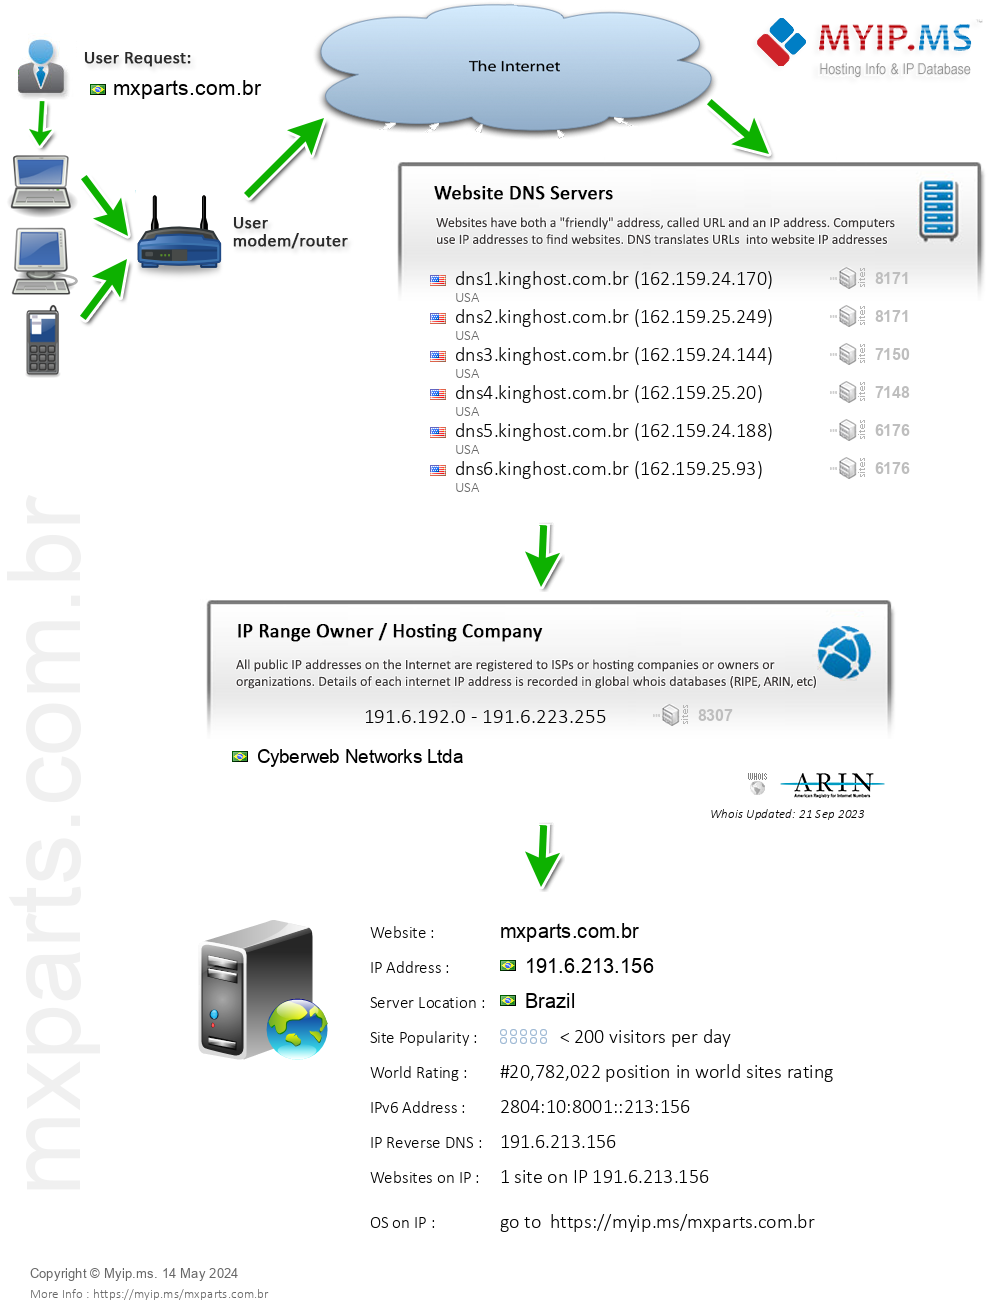 Mxparts.com.br - Website Hosting Visual IP Diagram